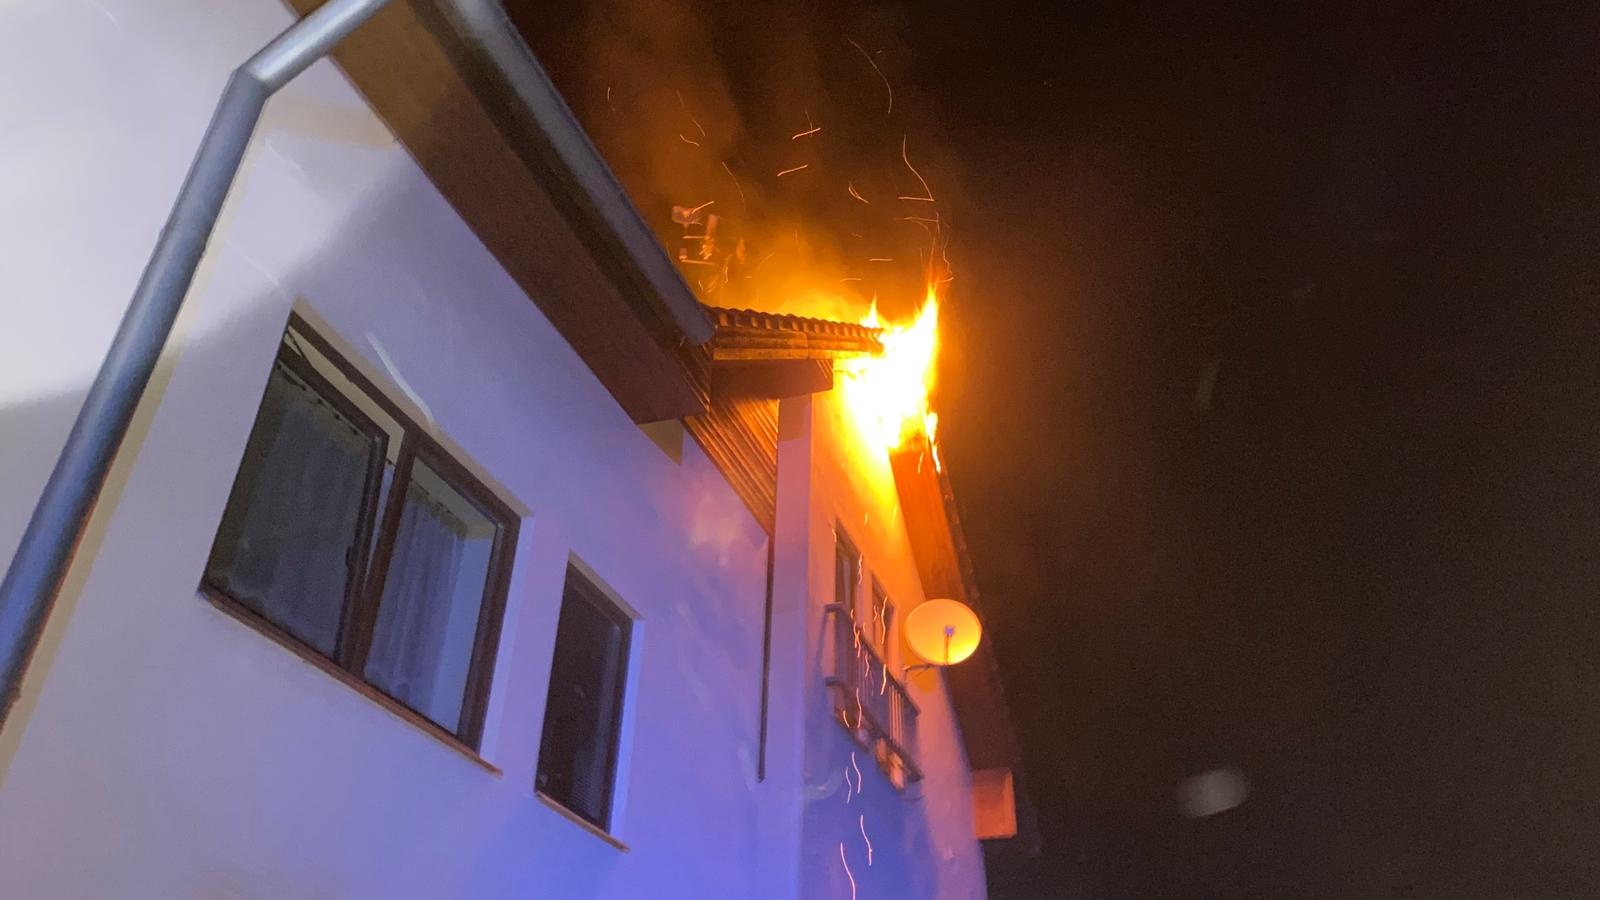 002 - požár střechy bytového domu.jpg